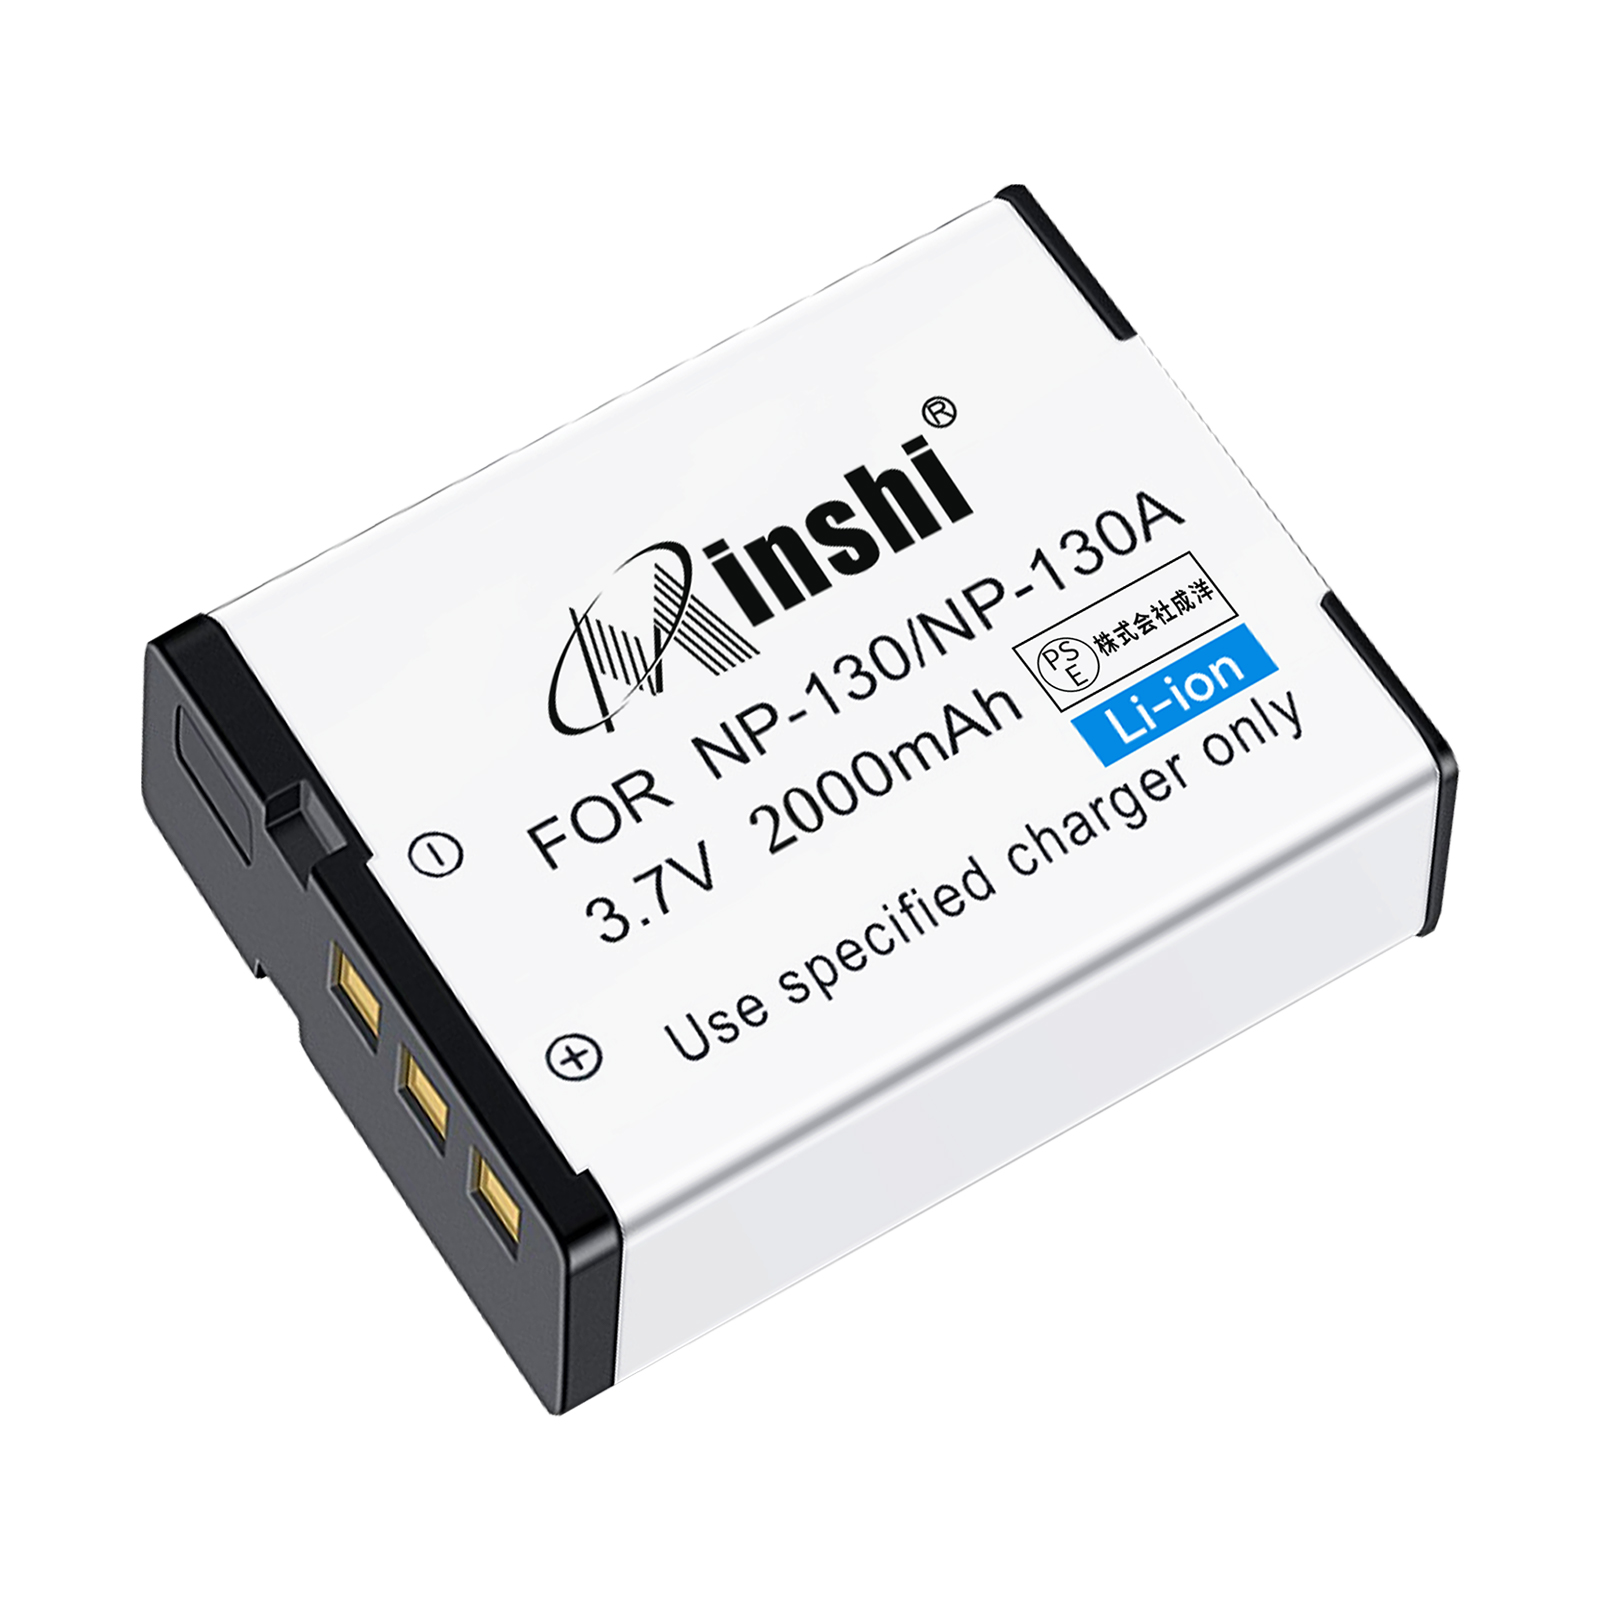 【1年保証】minshi CASIO EX-ZR1000 【2000mAh 3.7V】PSE認定済 高品質NP-130互換バッテリーPHB